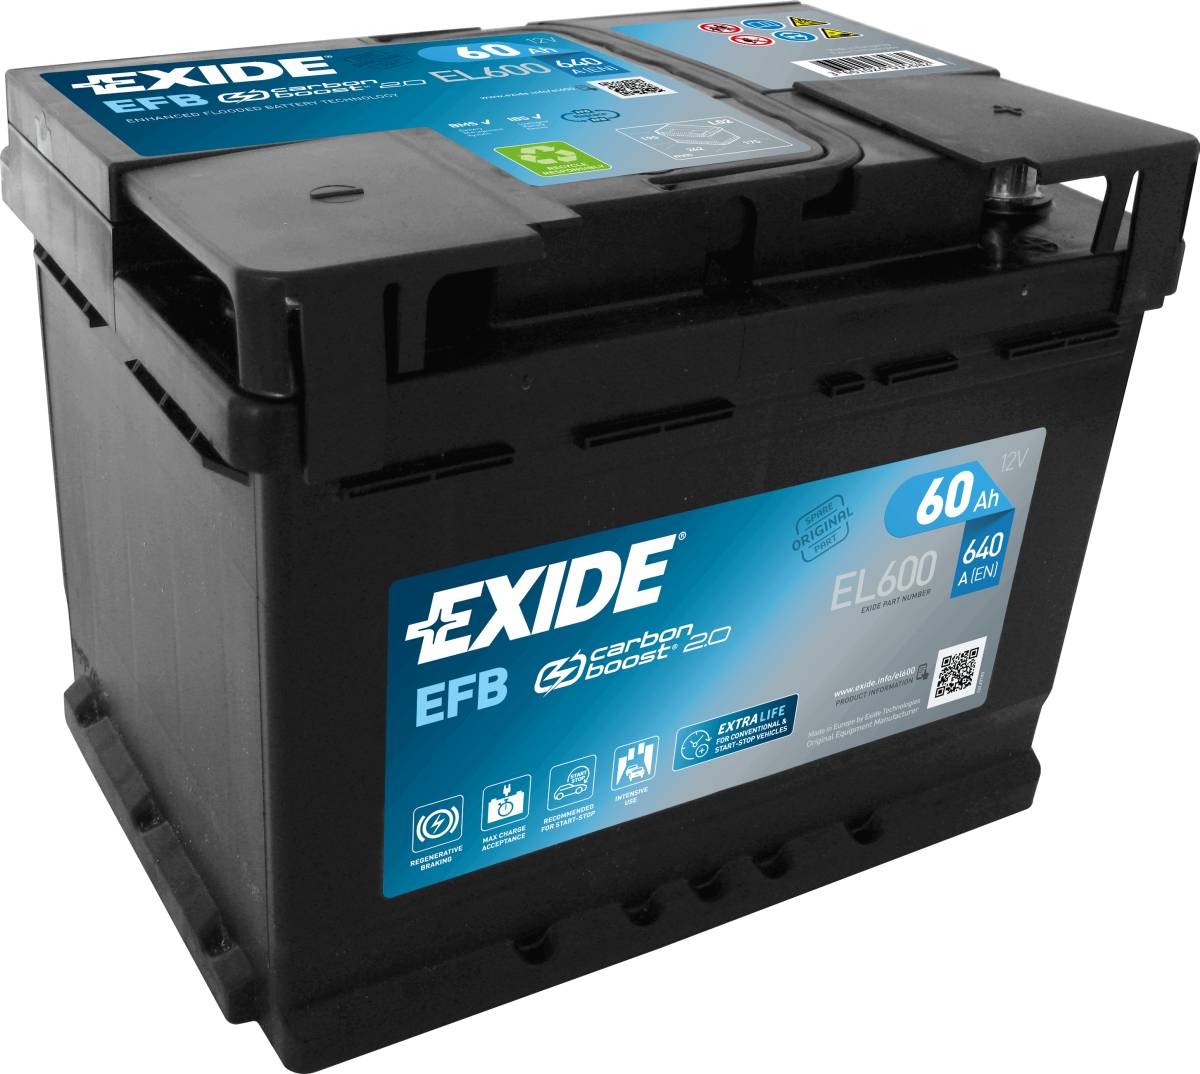 Exide EL600 Start-Stop EFB 12V 60 Ah 640A car battery, Starter batteries, Boots & Marine, Batteries by application